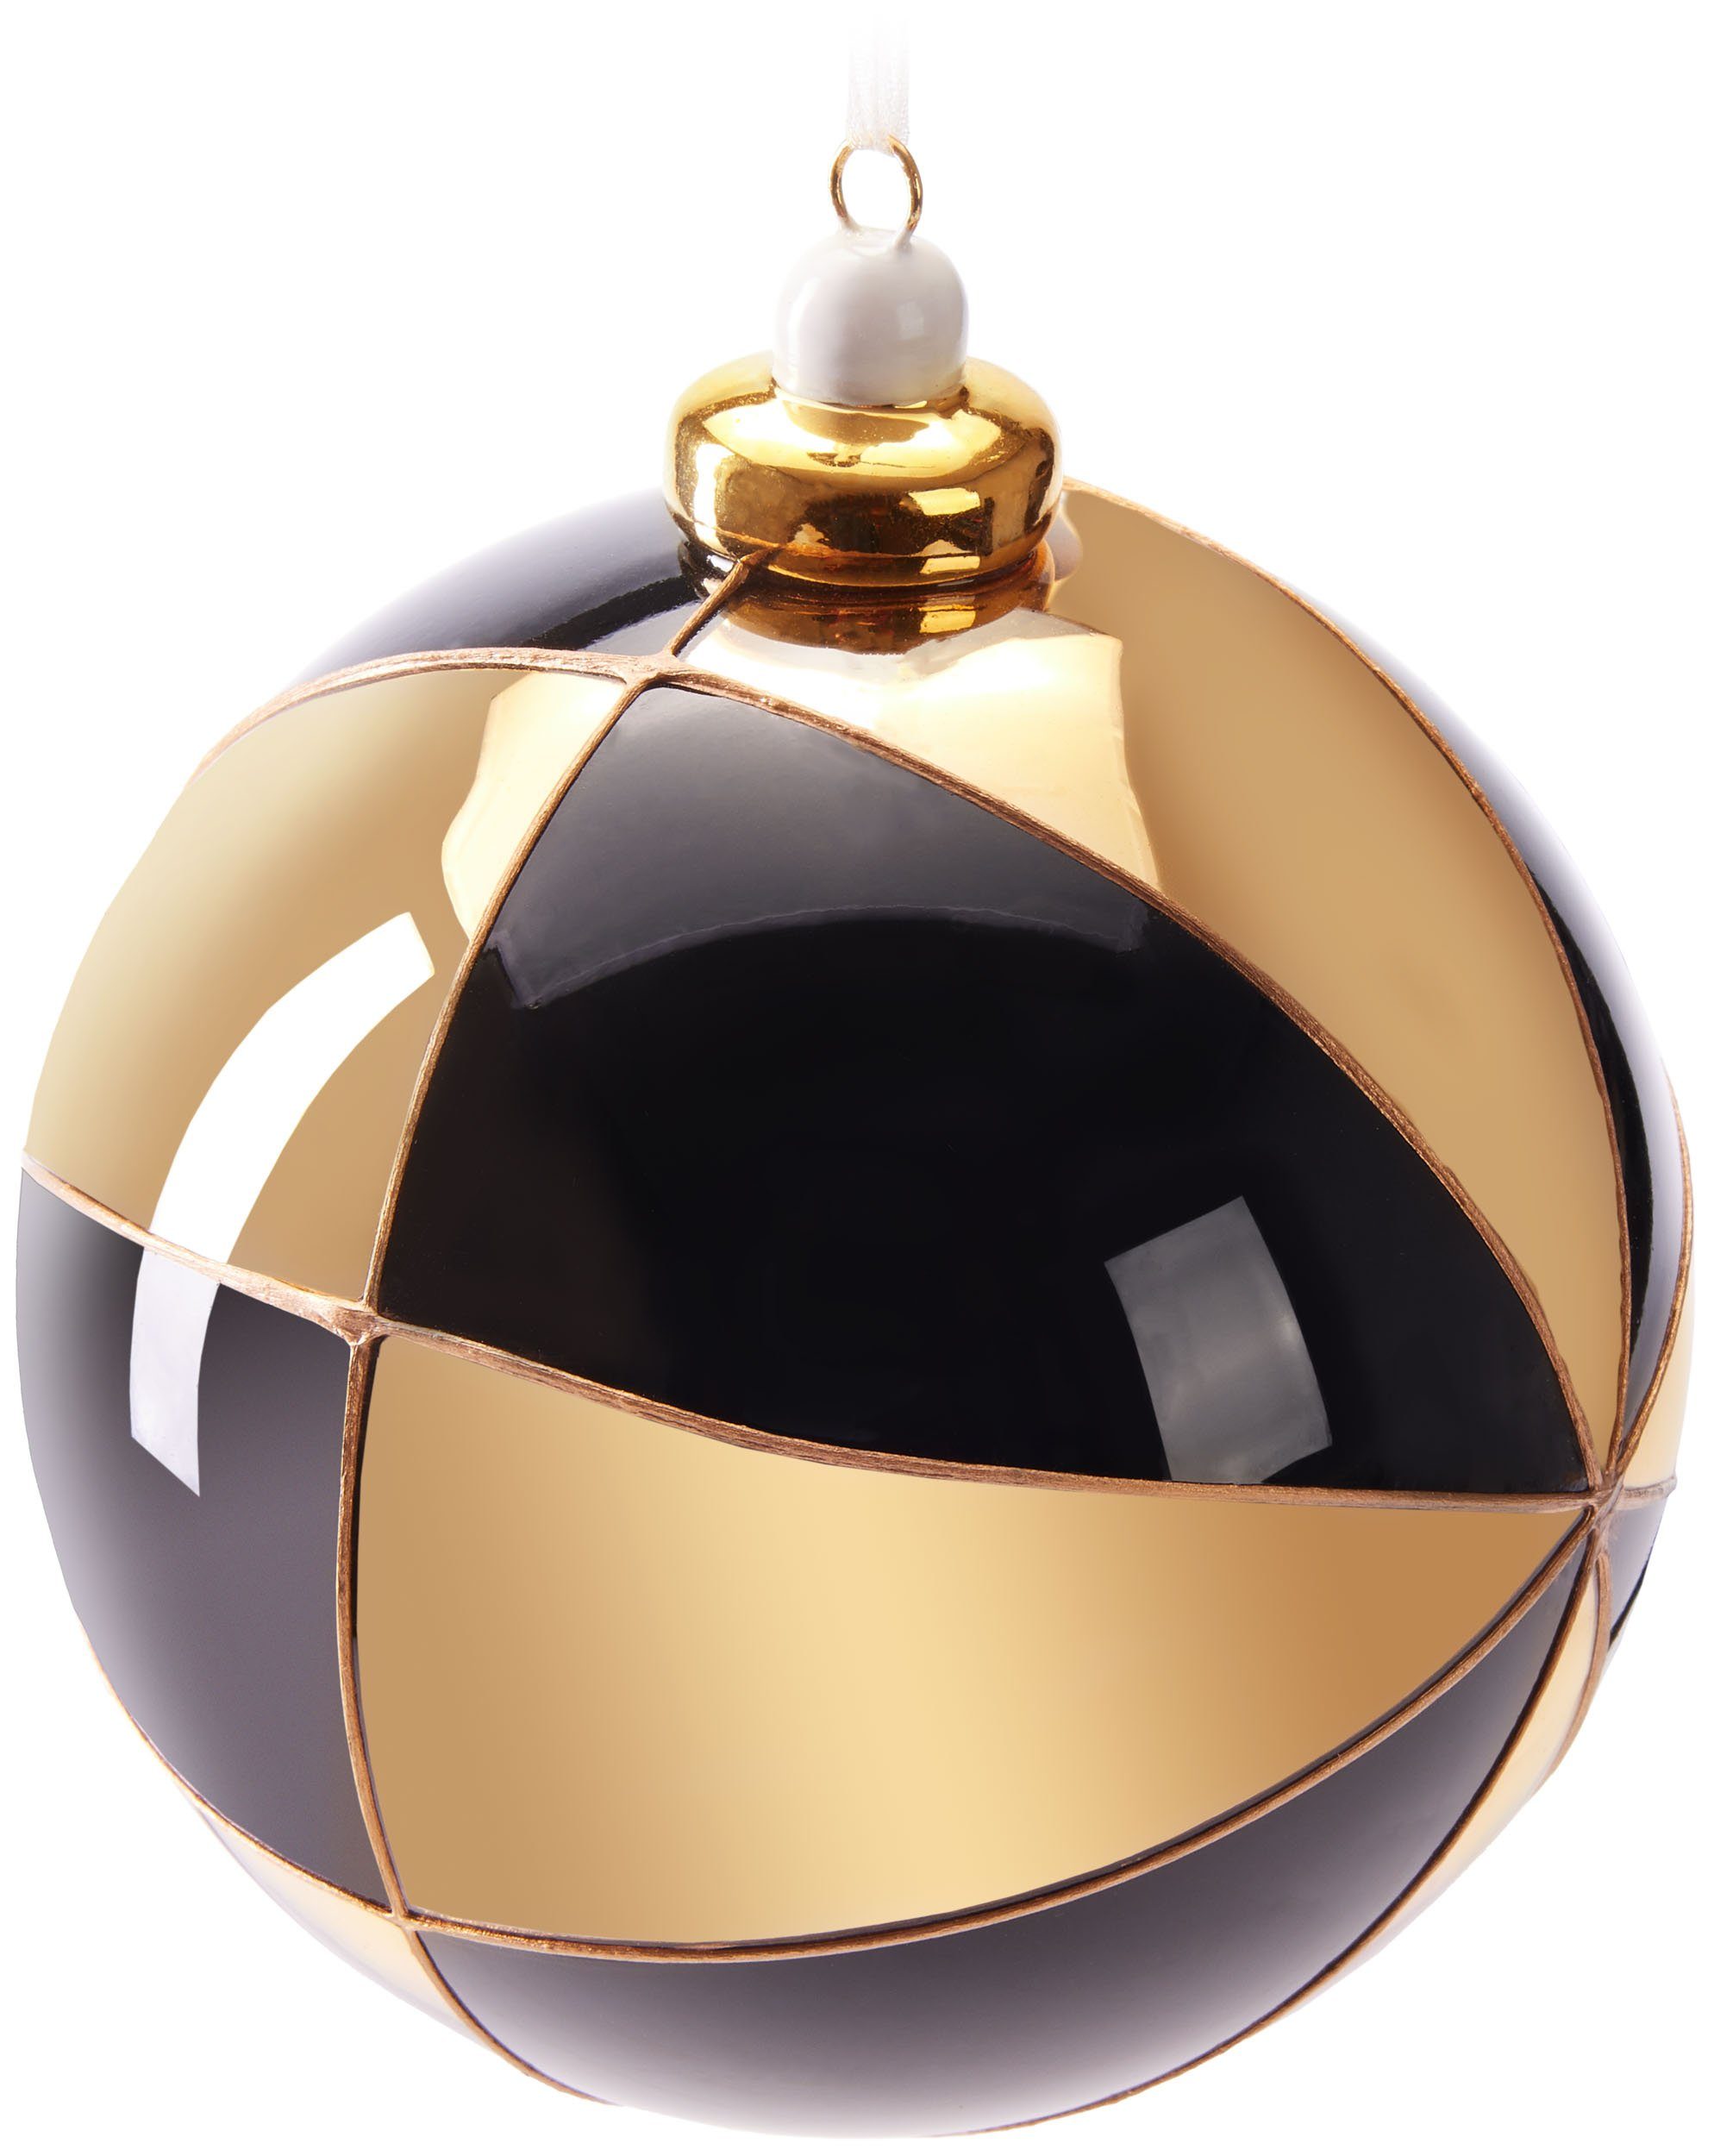 BRUBAKER Weihnachtsbaumkugel Premium Weihnachtskugel mit Gold Muster - 10 cm Baumkugel aus Glas (1 St), Christbaumkugel mit Porzellan Topper - Handarbeit Weihnachtsdeko